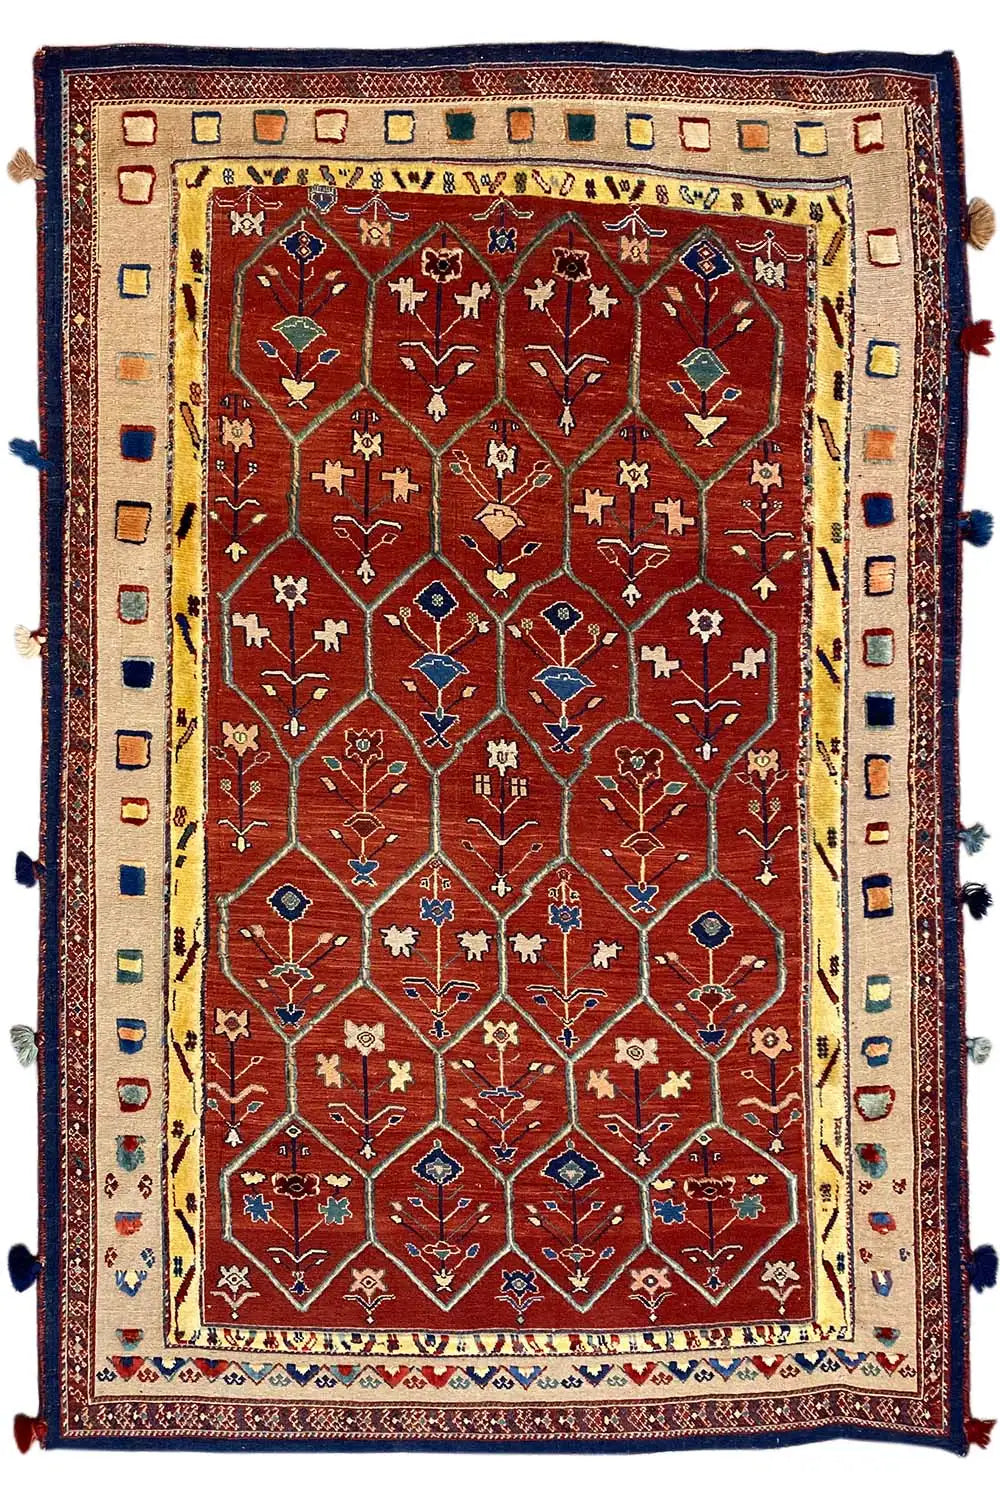 Soumakh (178x115cm) - German Carpet Shop